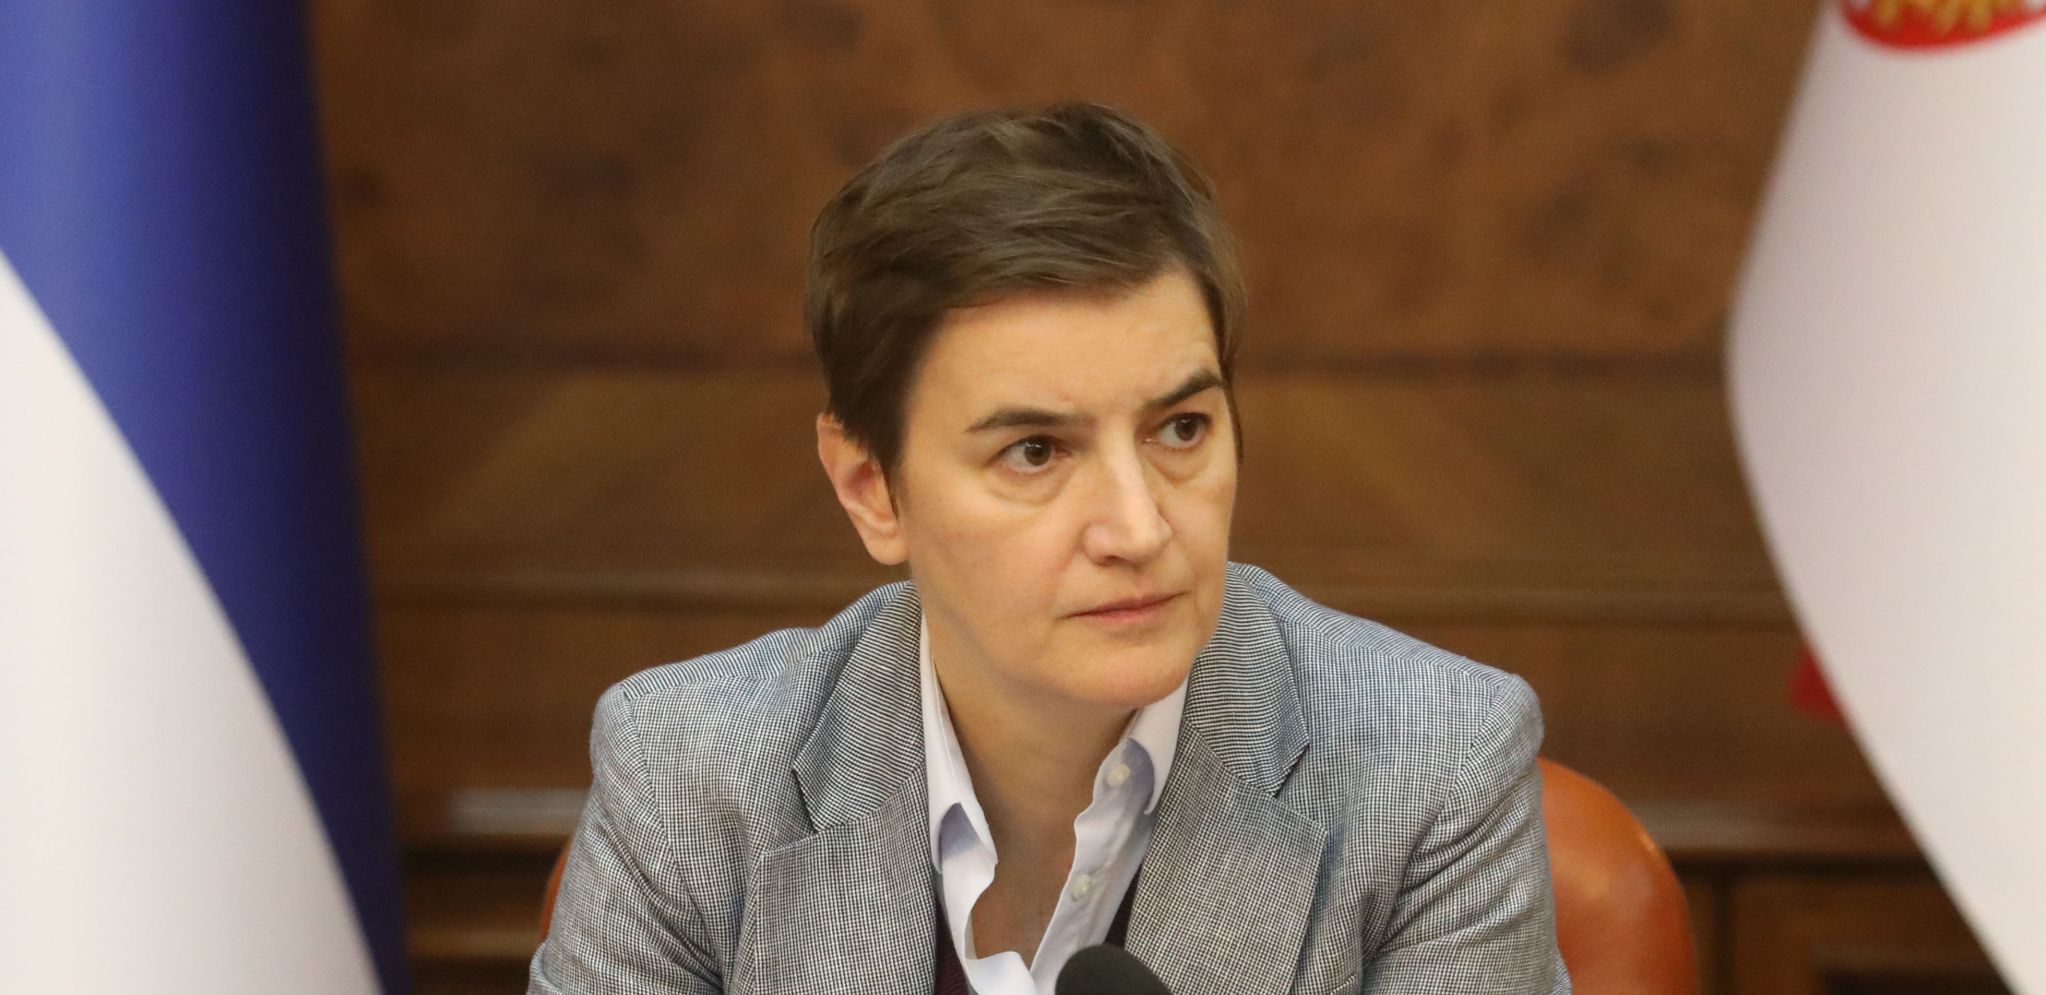 VUČIĆ ĆE U PRAGU BITI POD BRUTALNIM NAPADOM Ana Brnabić najavila teške sastanke za predsednika Srbije